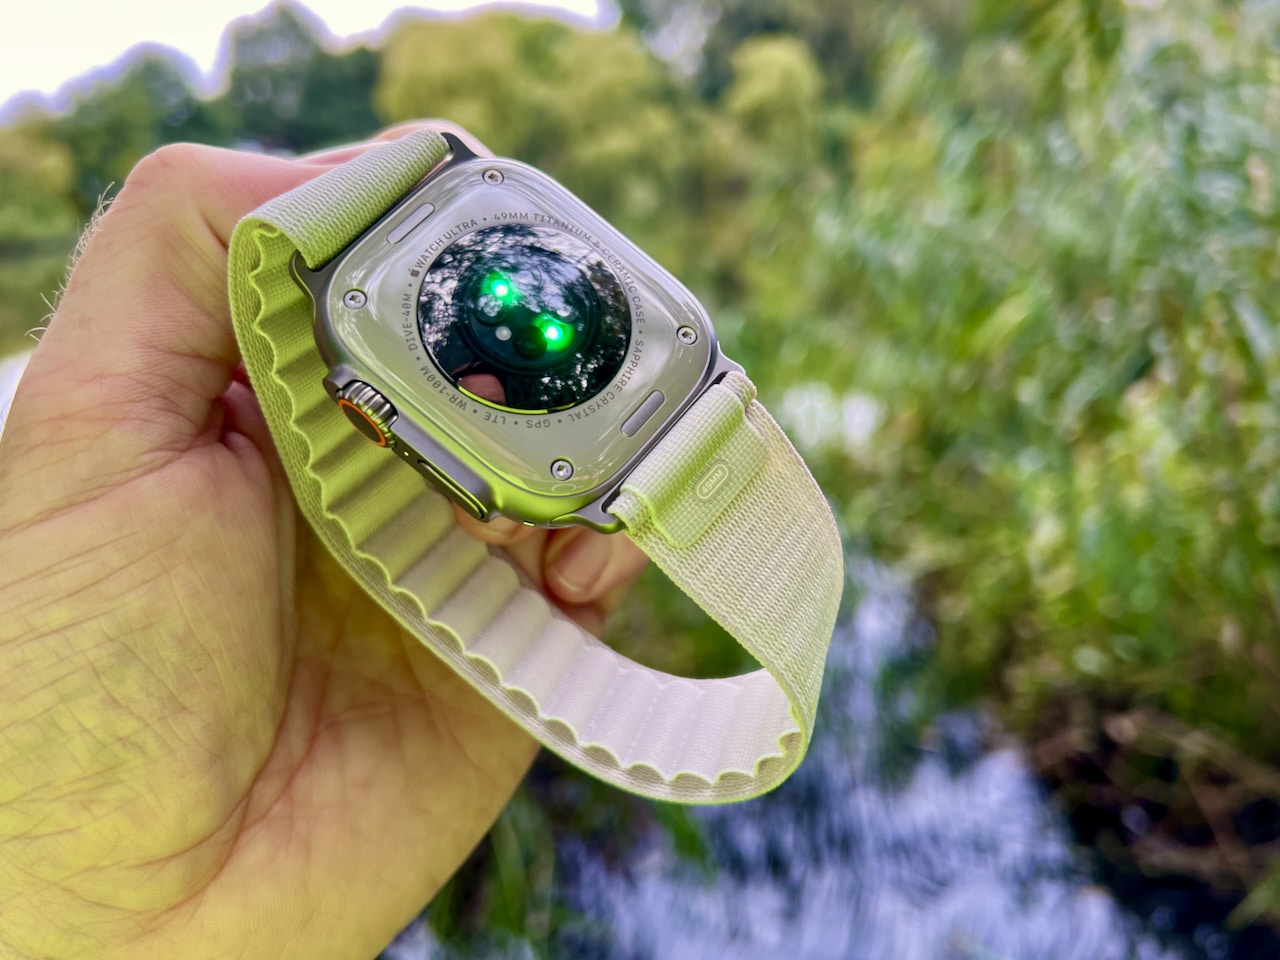 Die Apple Watch ist das persönlichste Gerät, das Apple je entwickelt hat. Und sie ist darauf ausgelegt, dich den ganzen Tag zu begleiten. Das schöne Design, die anpassbaren Watch Faces und die Funktionen zur Gesundheitsüberwachung machen sie zu einem tollen Gadget, schicken Modeaccessoire und zugleich zu einem nützlichen Werkzeug. Seit ihrer Einführung im Jahr 2015 hat sich die Apple Watch zu einem der beliebtesten Wearables auf dem Markt entwickelt. Mit jedem neuen Modell hat Apple die Funktionalität und das Design verbessert und optimiert, um sie zu einem noch nützlicheren Werkzeug und modischen Accessoire zu machen. Die Apple Watch ist jedoch mehr als nur eine schöne Uhr. Sie ist ein hochmodernes Gerät mit vielen Funktionen, die dein Leben einfacher und gesünder machen. Von der Überwachung deiner Fitness- und Gesundheitsdaten über die Unterstützung bei der Navigation bis hin zum Empfang von Benachrichtigungen - die Apple Watch ist ein wahres Multitalent.